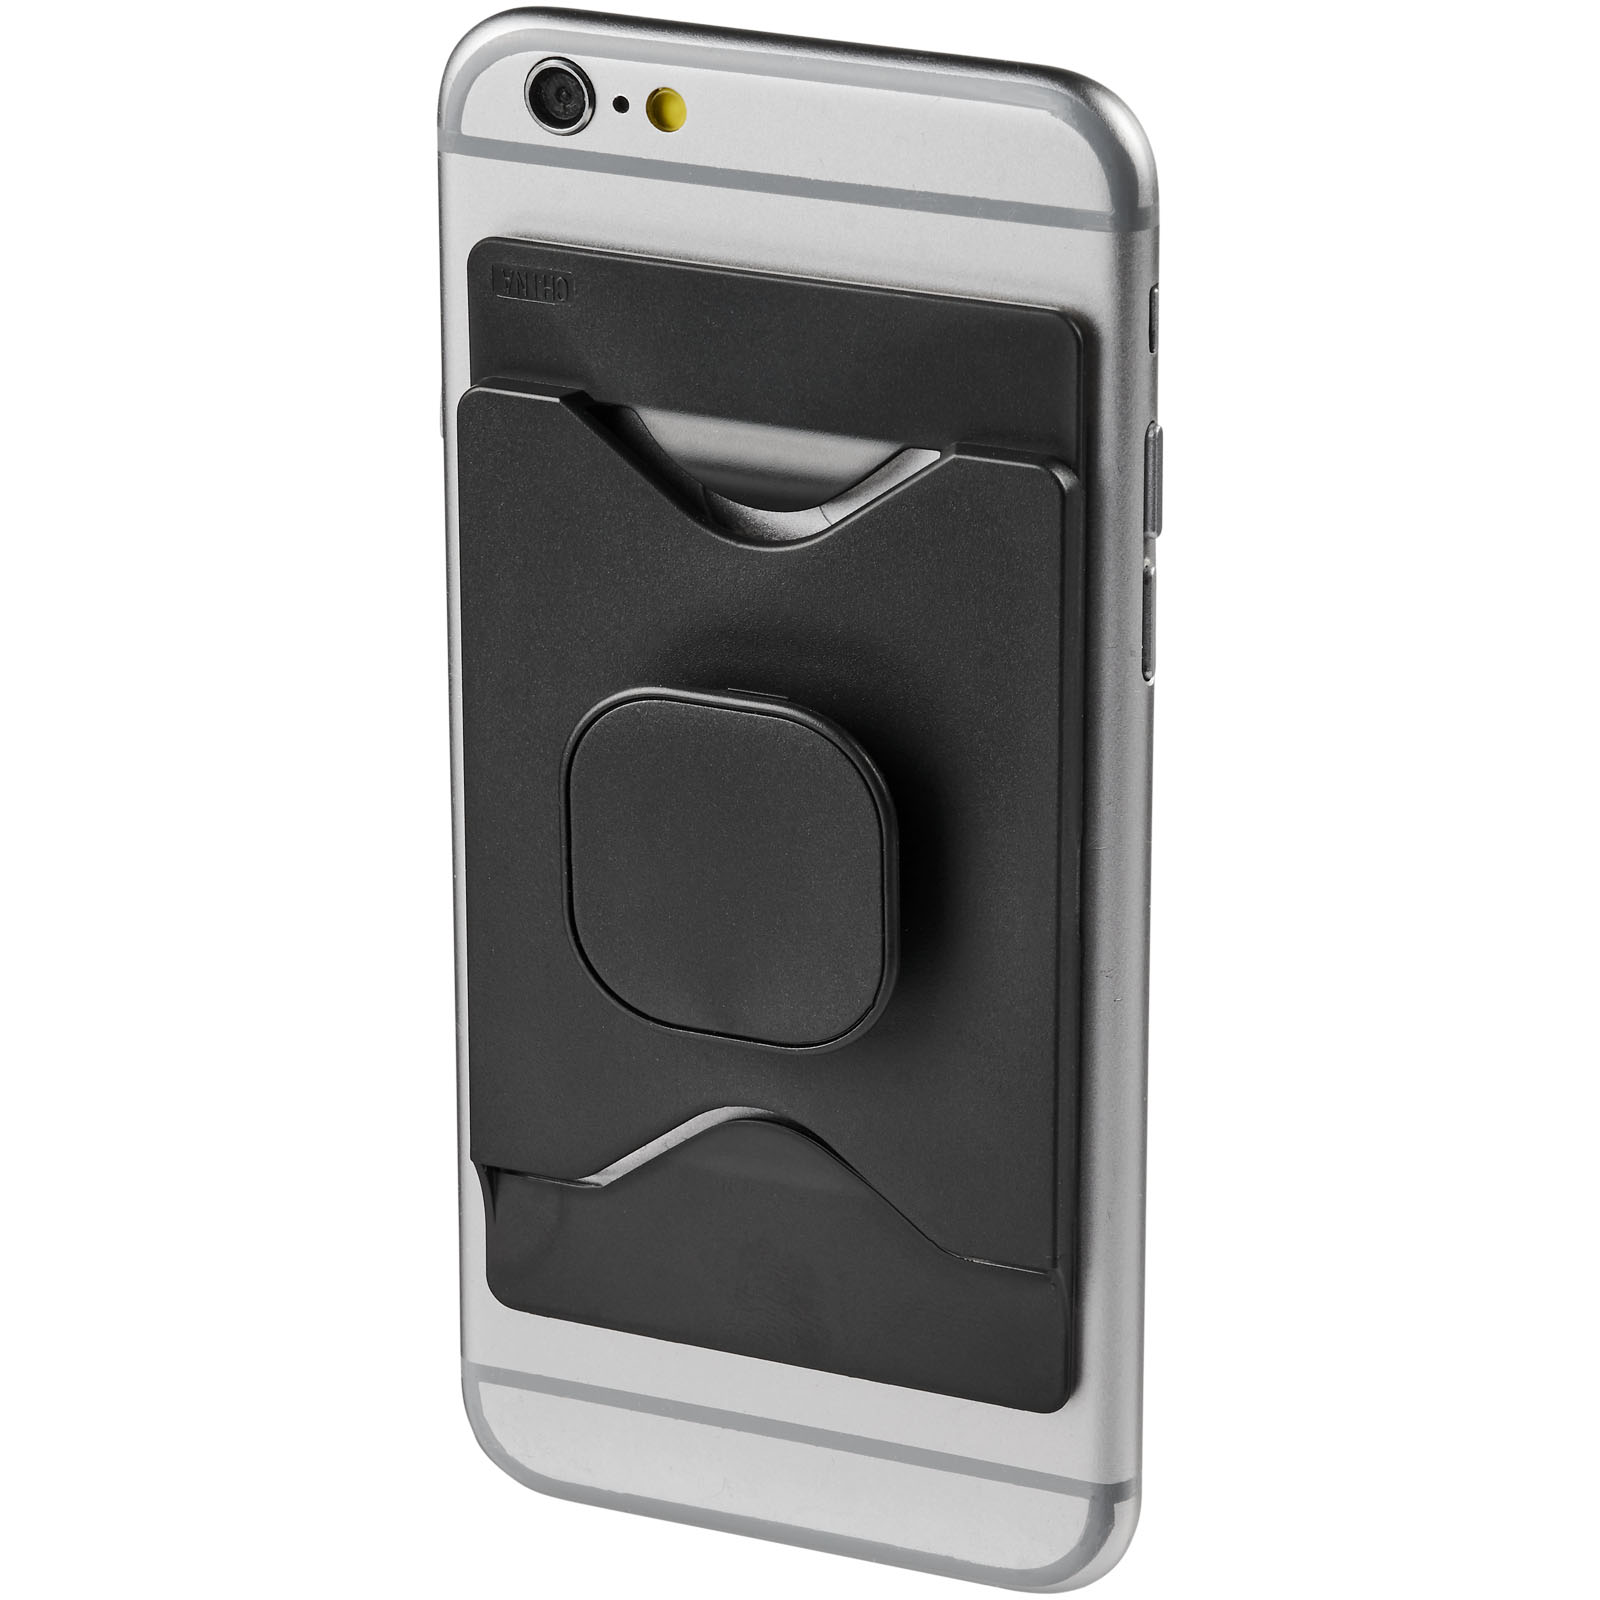 Soporte adhesivo para teléfono inteligente y bolso de cartera - Robres del Castillo